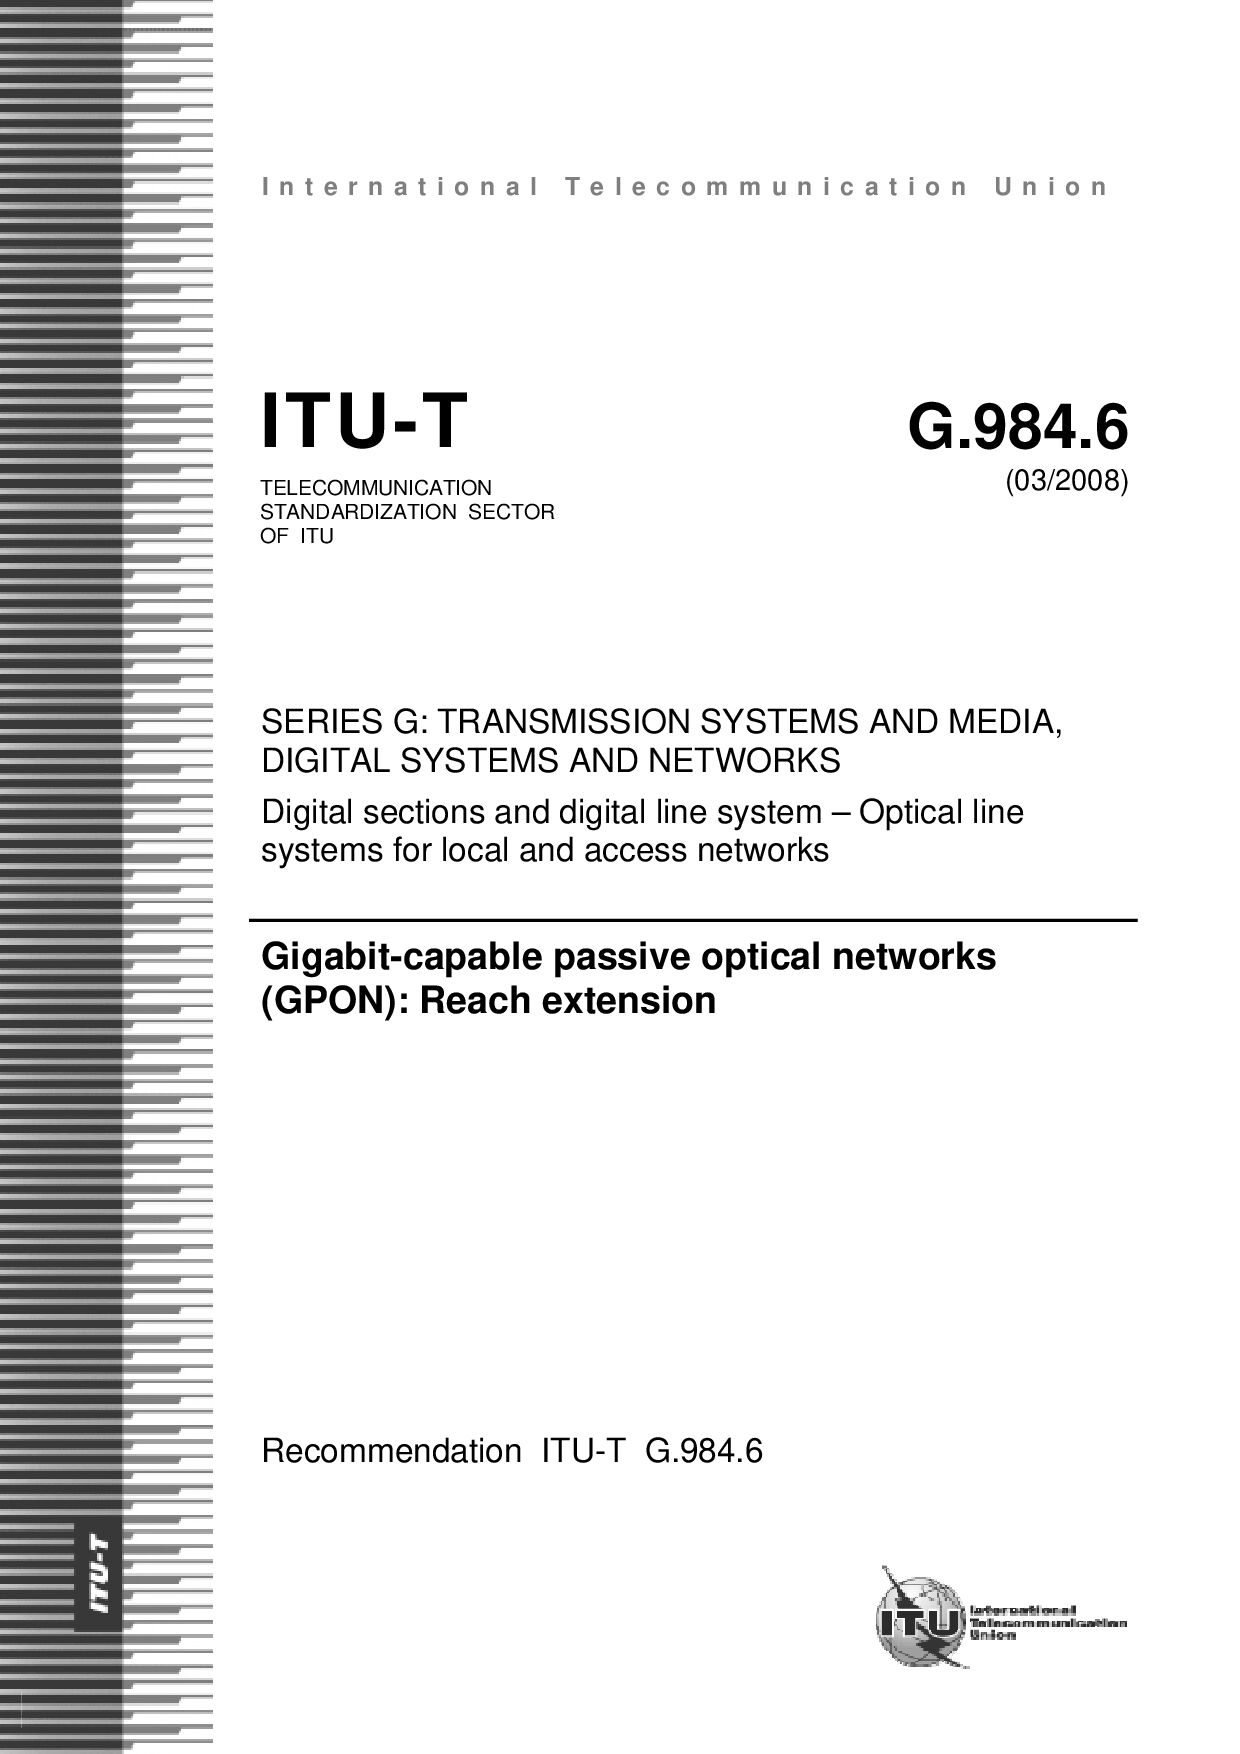 ITU-T G.984.6-2008